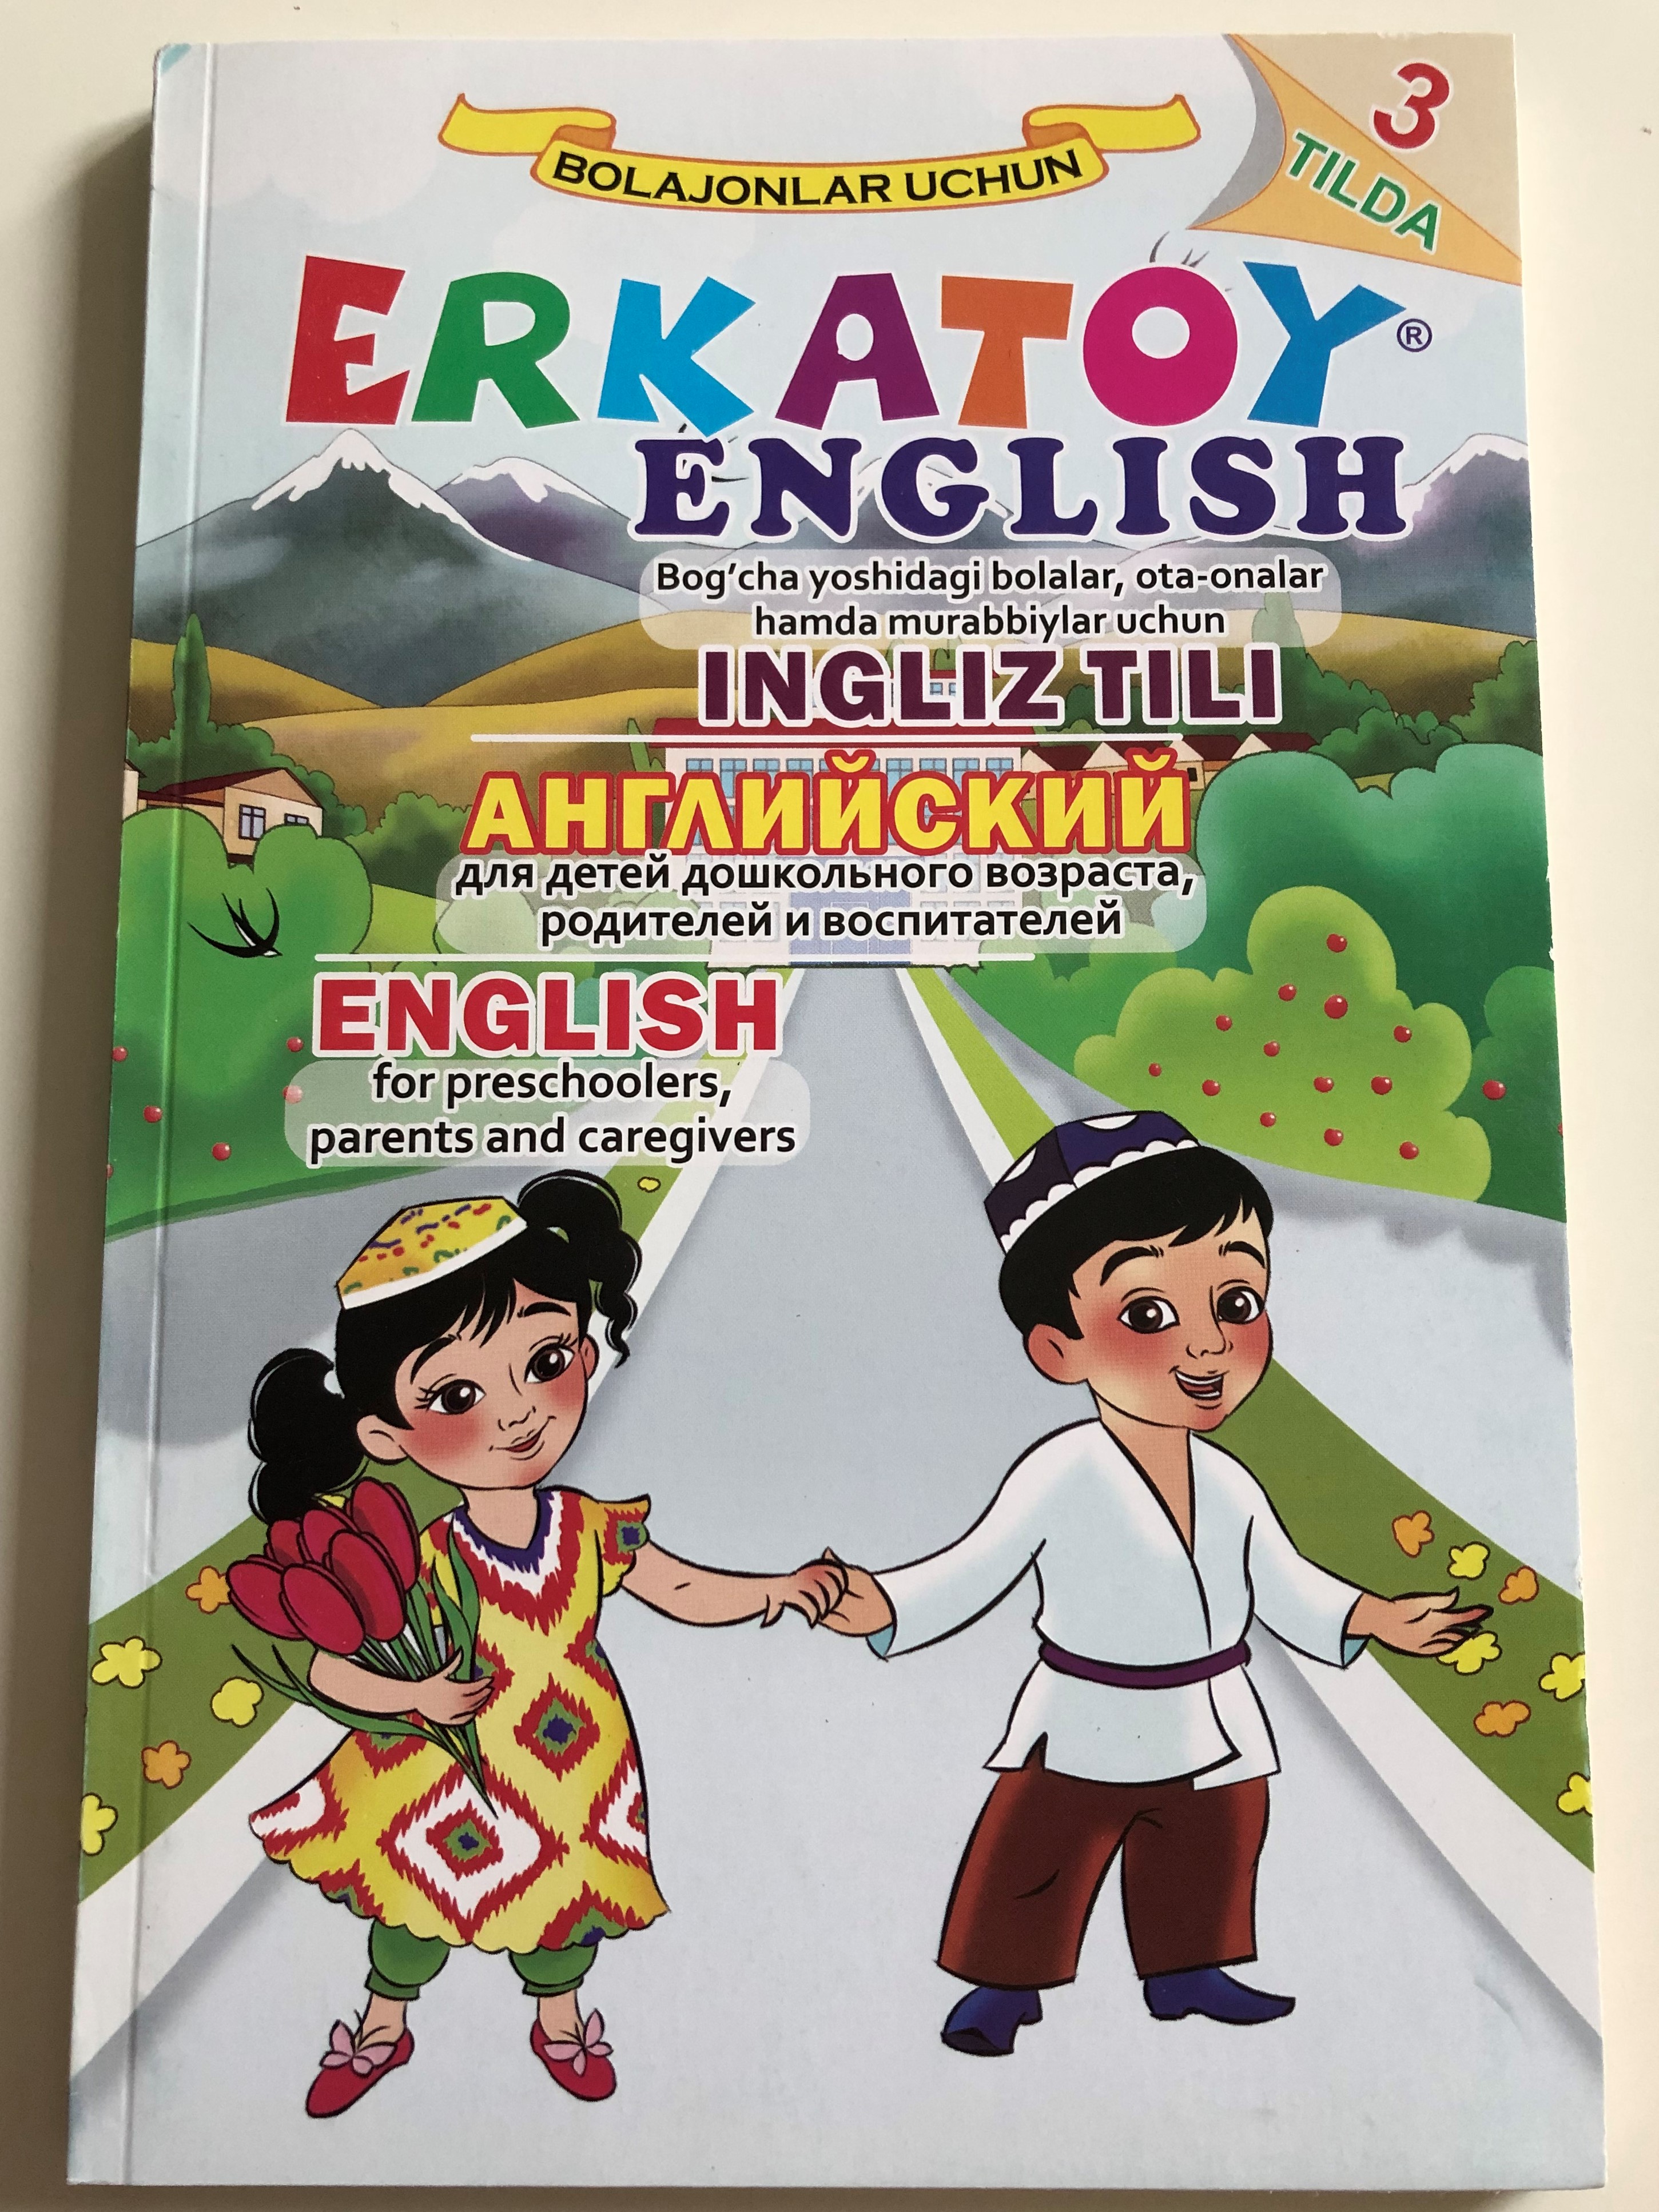 erkatoy-english-alphabet-sounds-games-by-nodir-yusupov-bolajonlar-uchun-sano-standart-nashriyoti-toshkent-2017-uzbek-russian-english-paperback-2017-1-.jpg